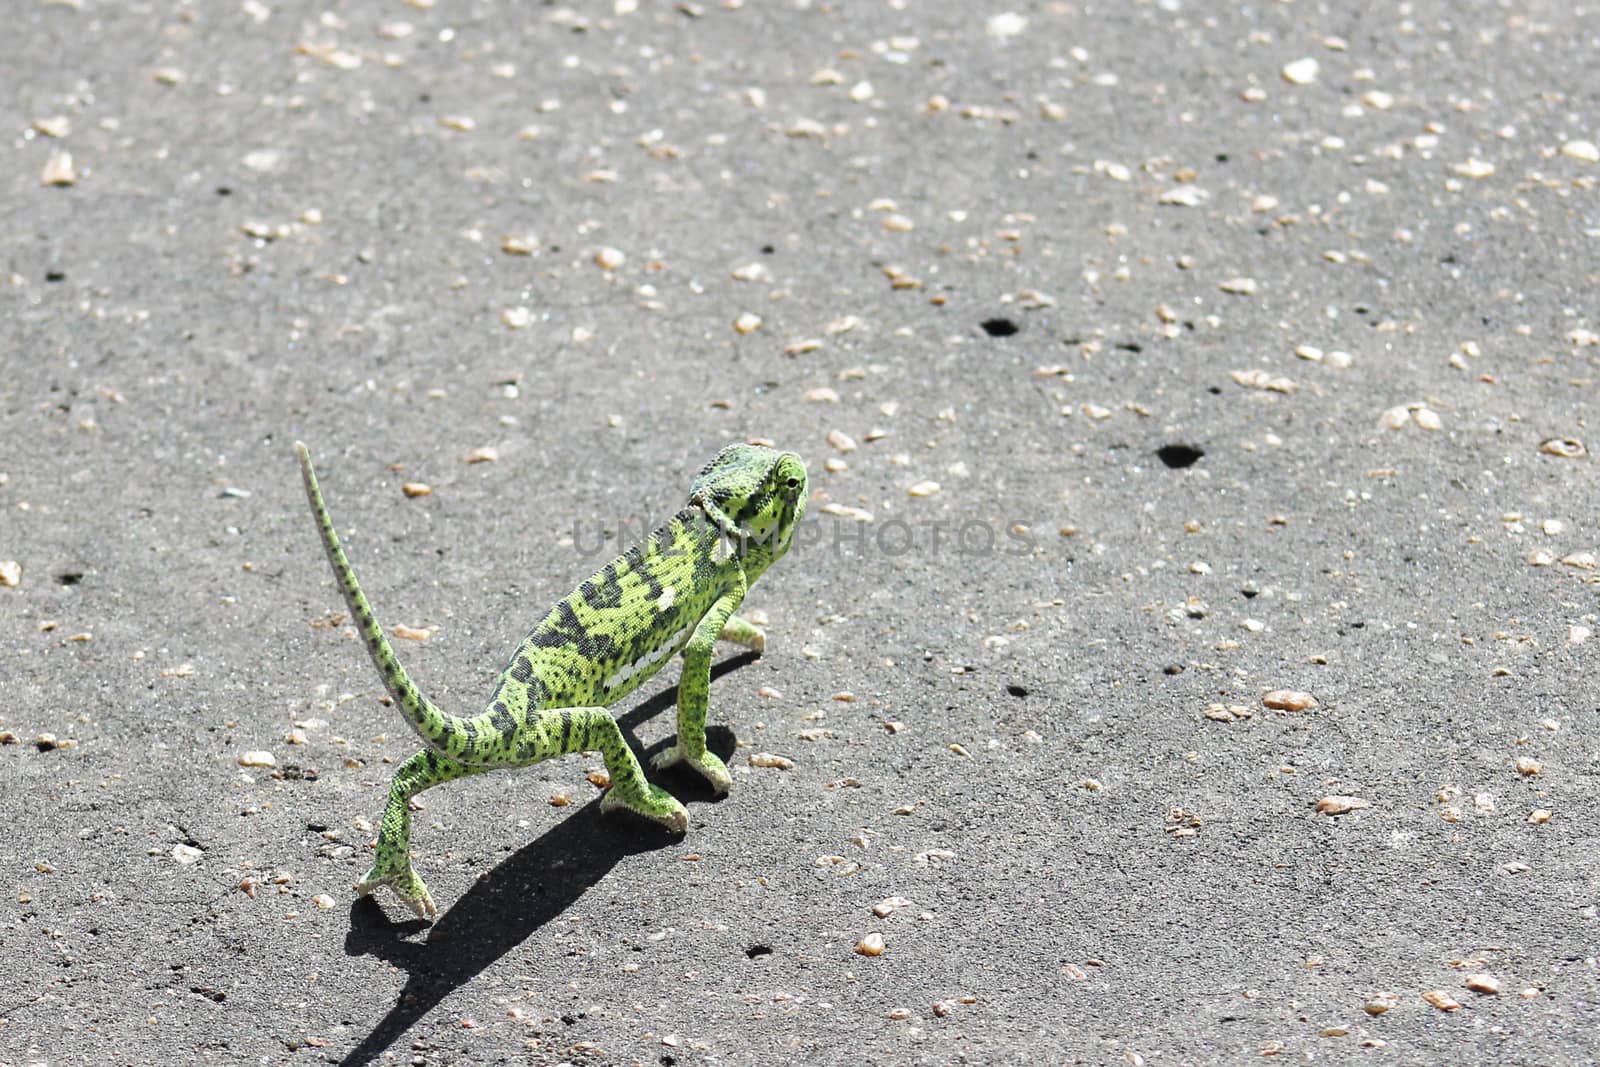 Flap Neck Chameleon (Chamaeleo dilepis) walking across the road